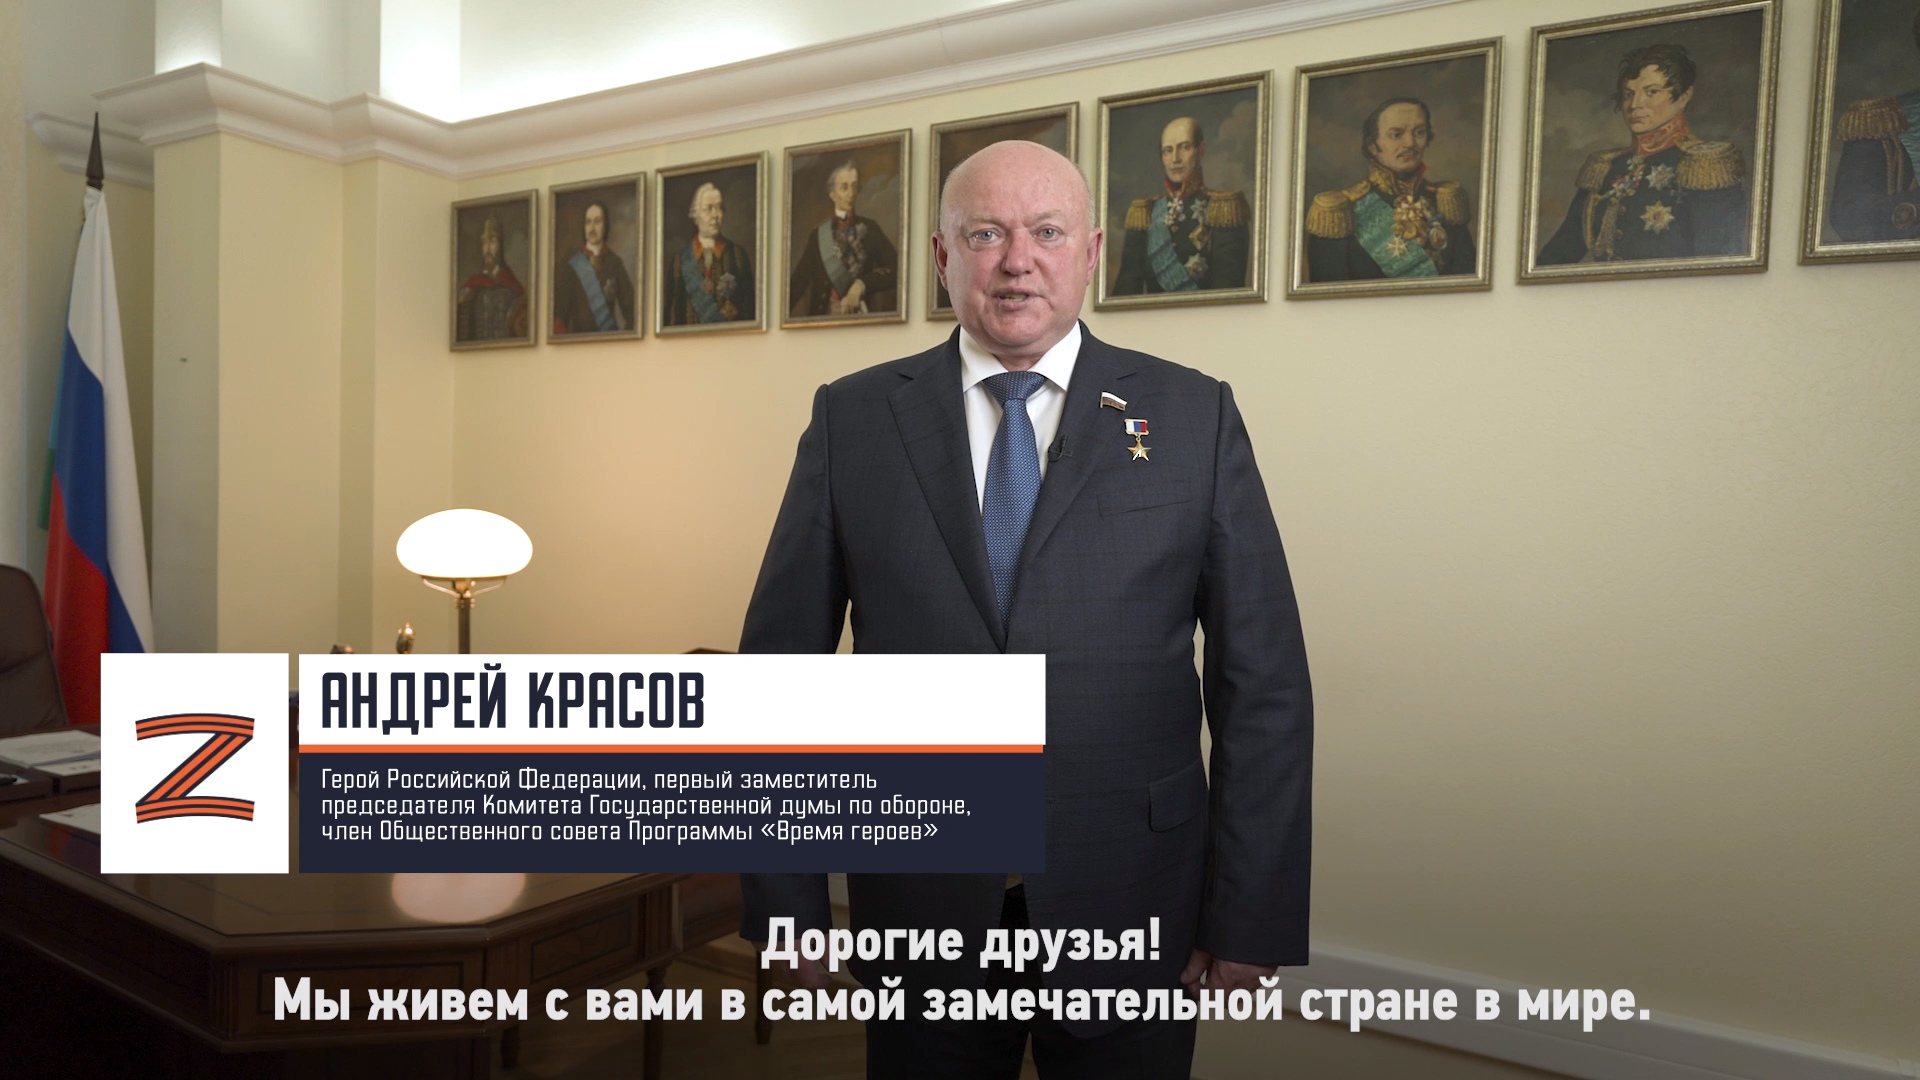 Депутат Государственной думы Андрей Красов: «Все участники прошли достаточно серьезный отбор»